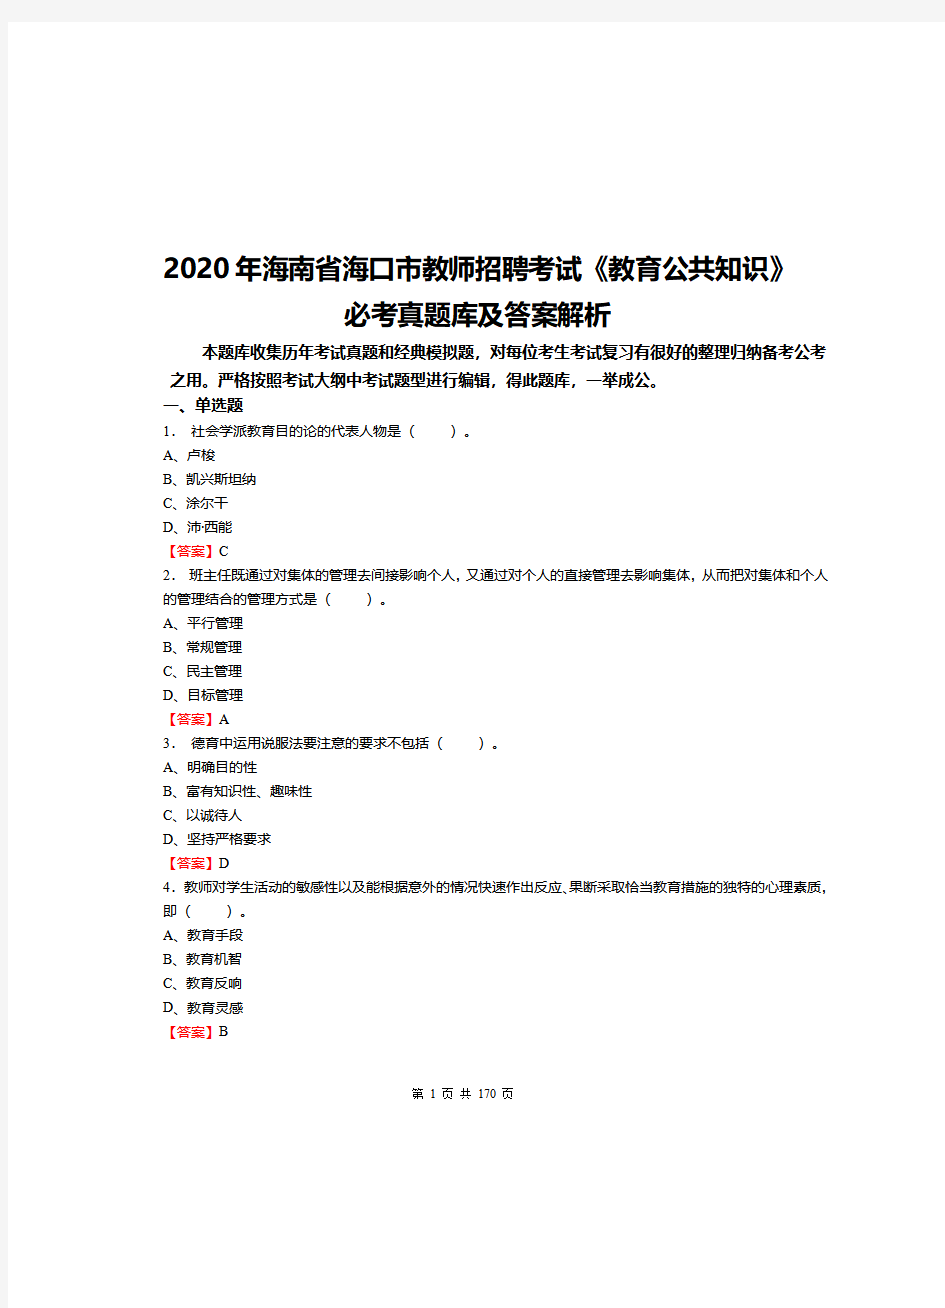 2020年海南省海口市教师招聘考试《教育公共知识》必考真题库及答案解析